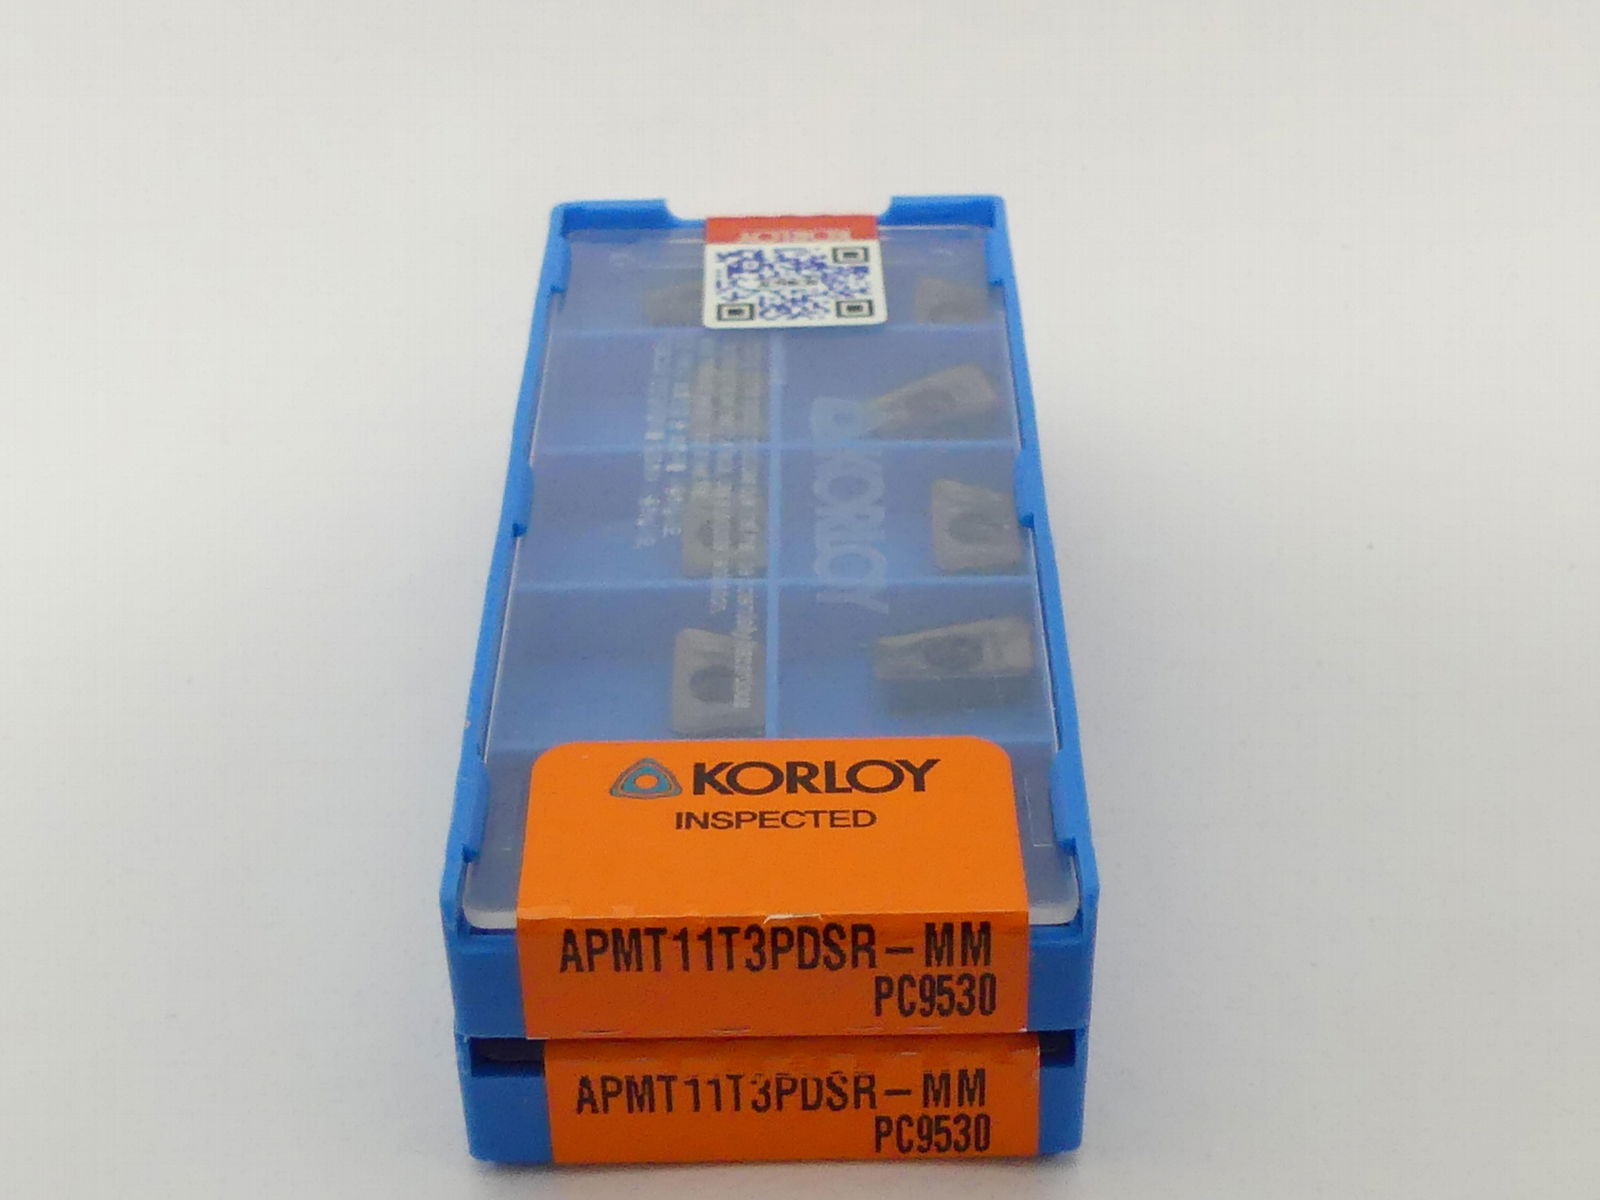 Korloy Apmt11t30pdsr-mm PC9530 for Milling Tools Carbide Tips 4